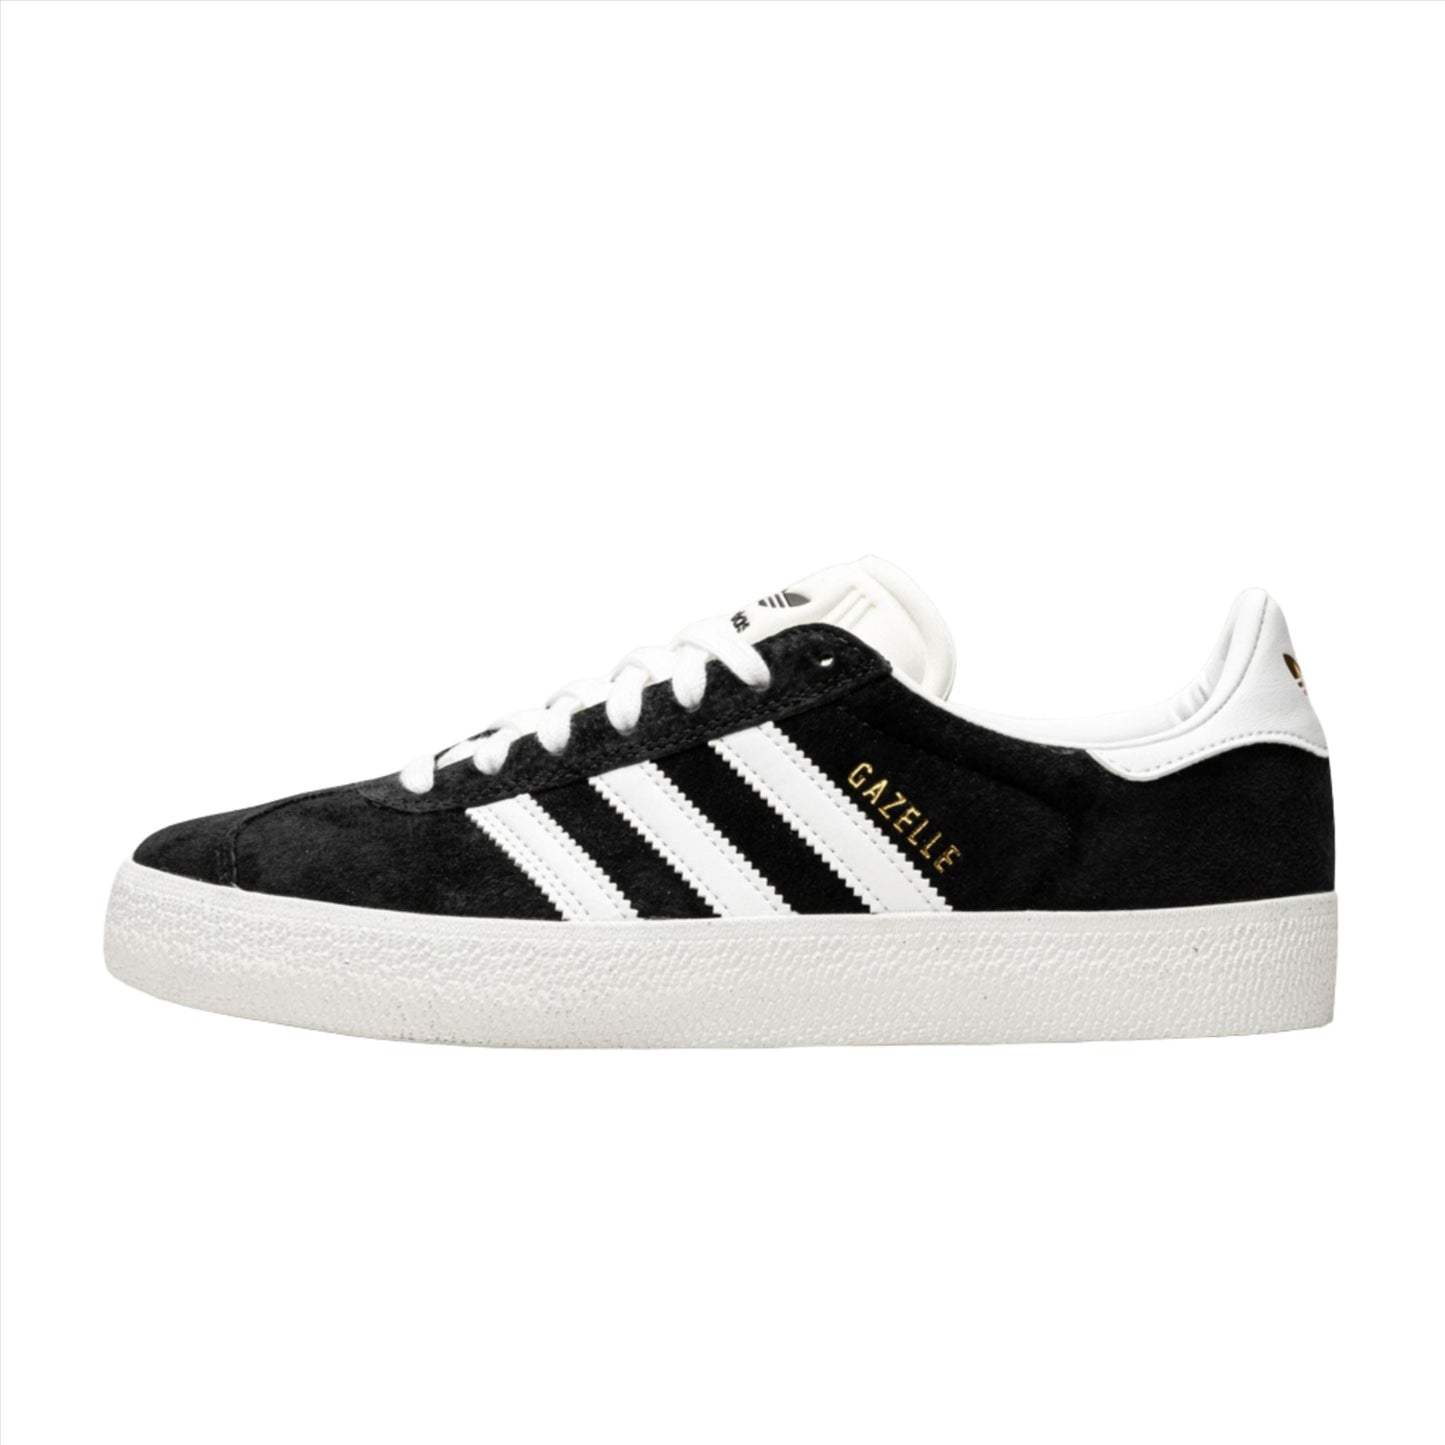 Adidas Gazelle ADV Black/White